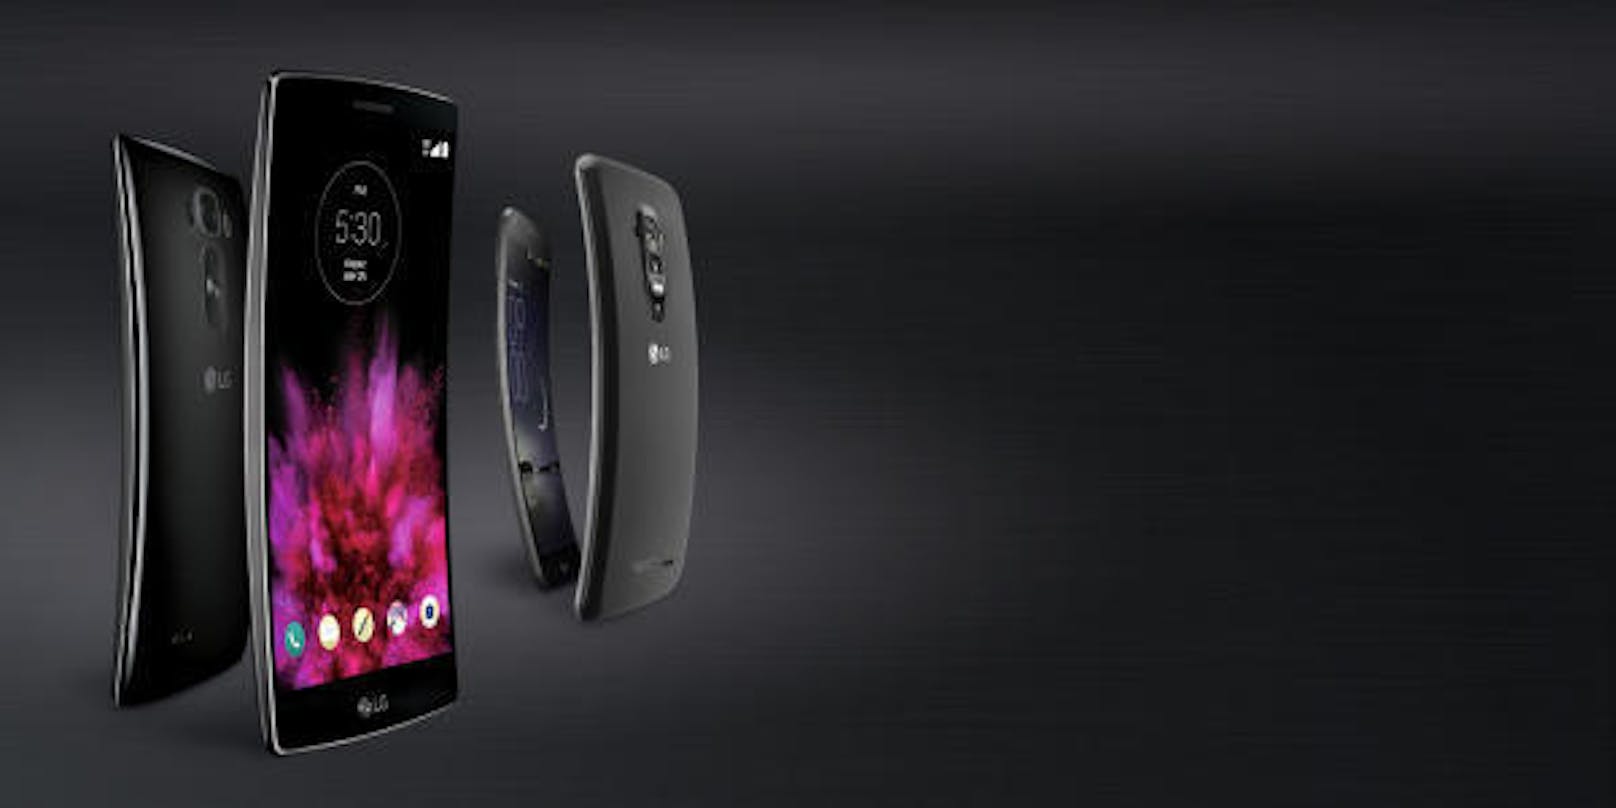 Ganz neu wäre ein nach innen gebogenes Display allerdings nicht. Hersteller LG hatte mit dem Modell G Flex 2 bereits im Jahr 2015 ein gekrümmtes Smartphone präsentiert.